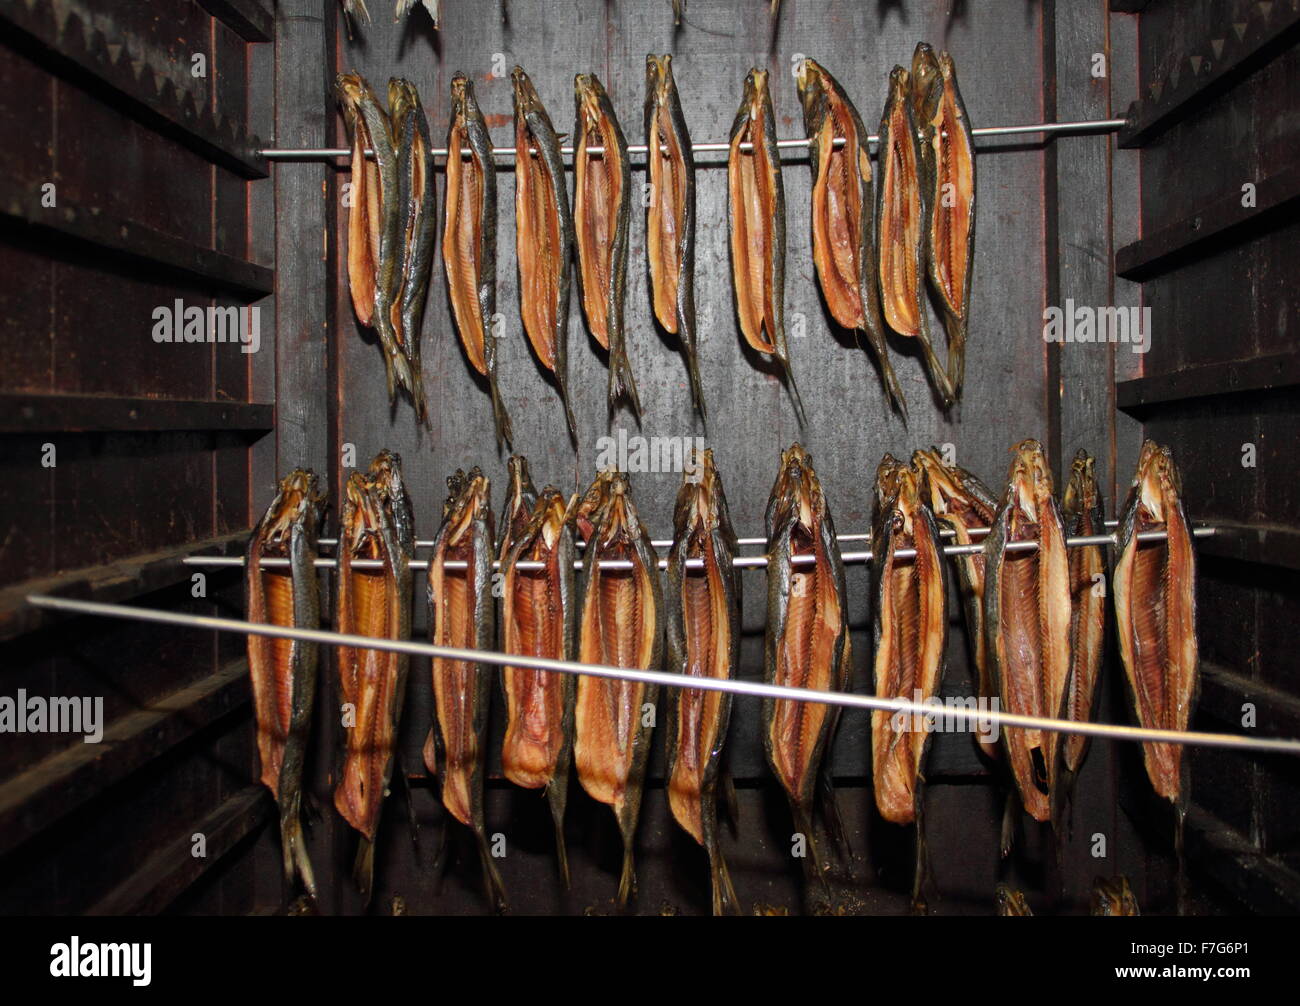 Vorbereitet Ganzen geräucherten Hering (Hering) in einem hölzernen rauchen Kabinett zum Verkauf auf einen Markt hängen, England Großbritannien Stockfoto